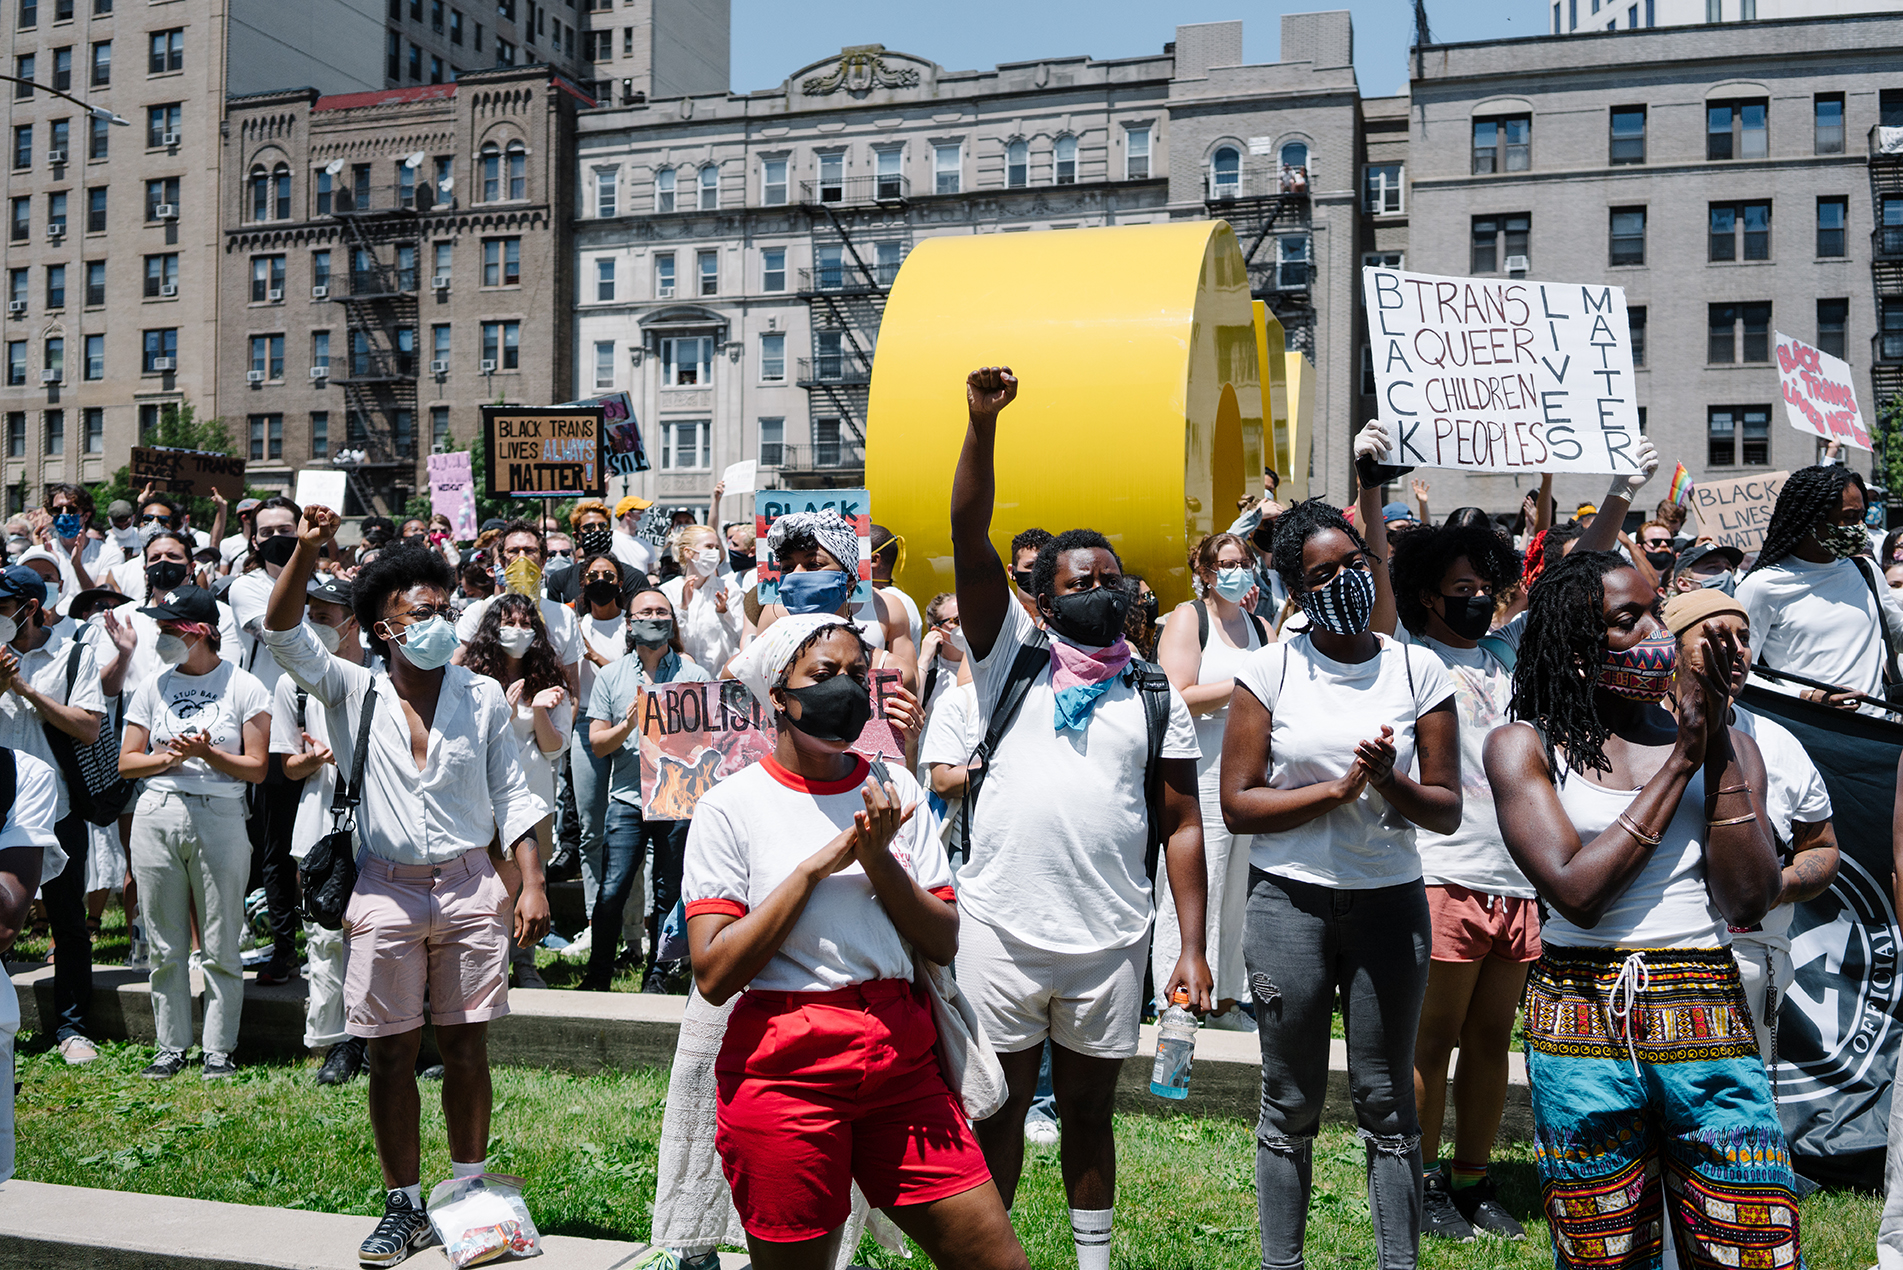 인종적으로 혼합되어 있지만 주로 흑인 인 시위자들이 브루클린 박물관 외부 광장에 연대하여 서 있습니다. 어떤 사람들은 표지판을 들고 있고 다른 사람들은 주먹을 들고 있습니다. 모두 흰색 옷을 입고 있습니다.